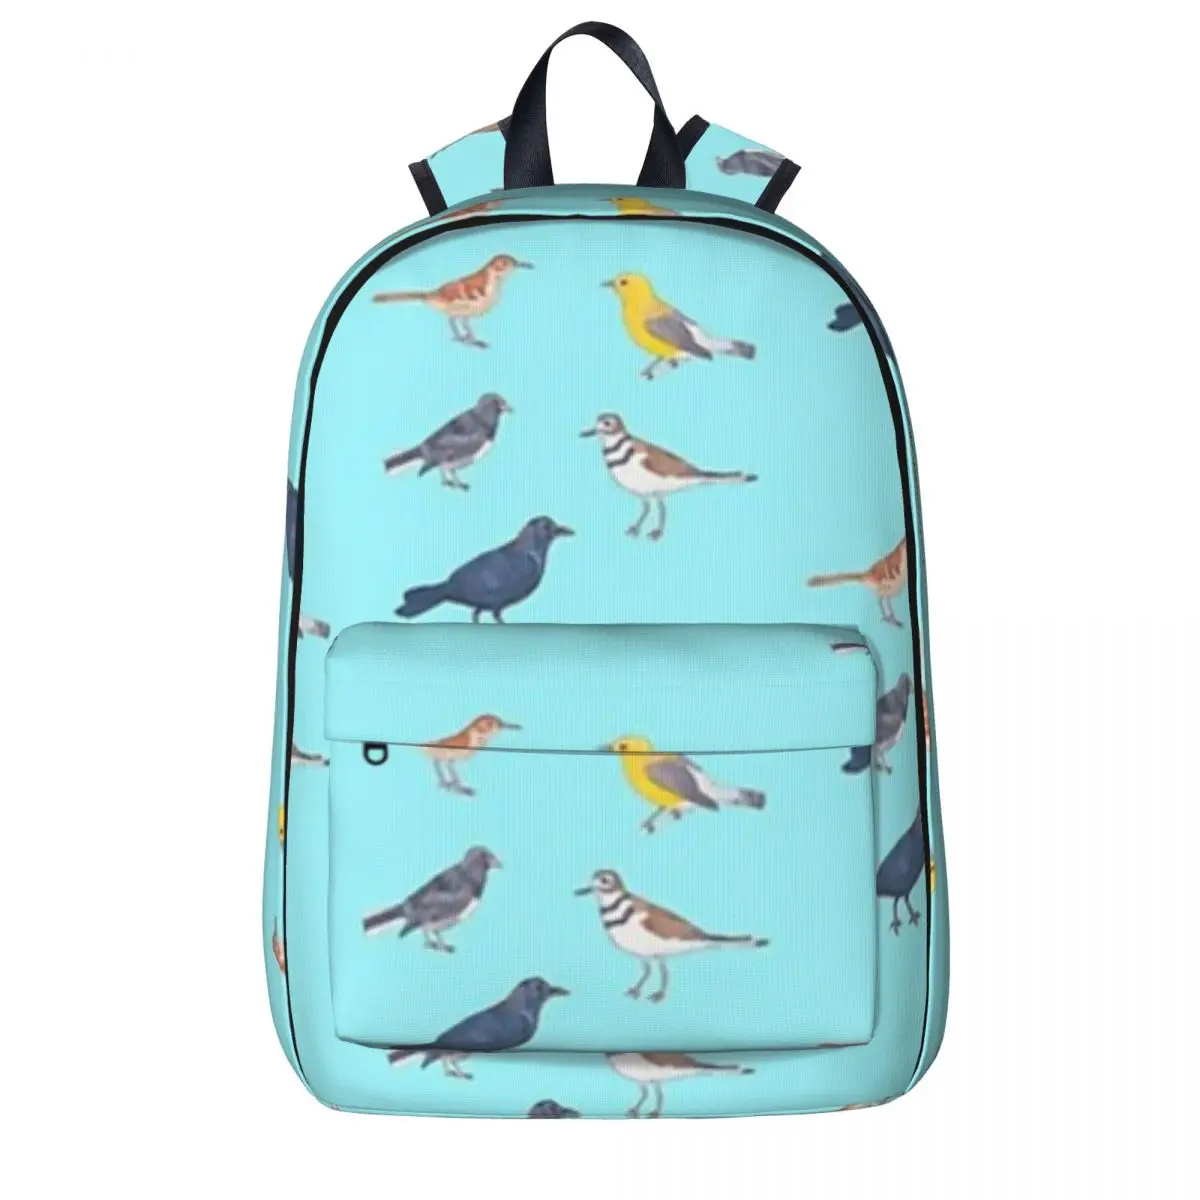 

Рюкзаки с принтом североамериканских птиц, школьные ранцы для мальчиков и девочек, детский дорожный ранец с мультипликационным рисунком, сумка на плечо